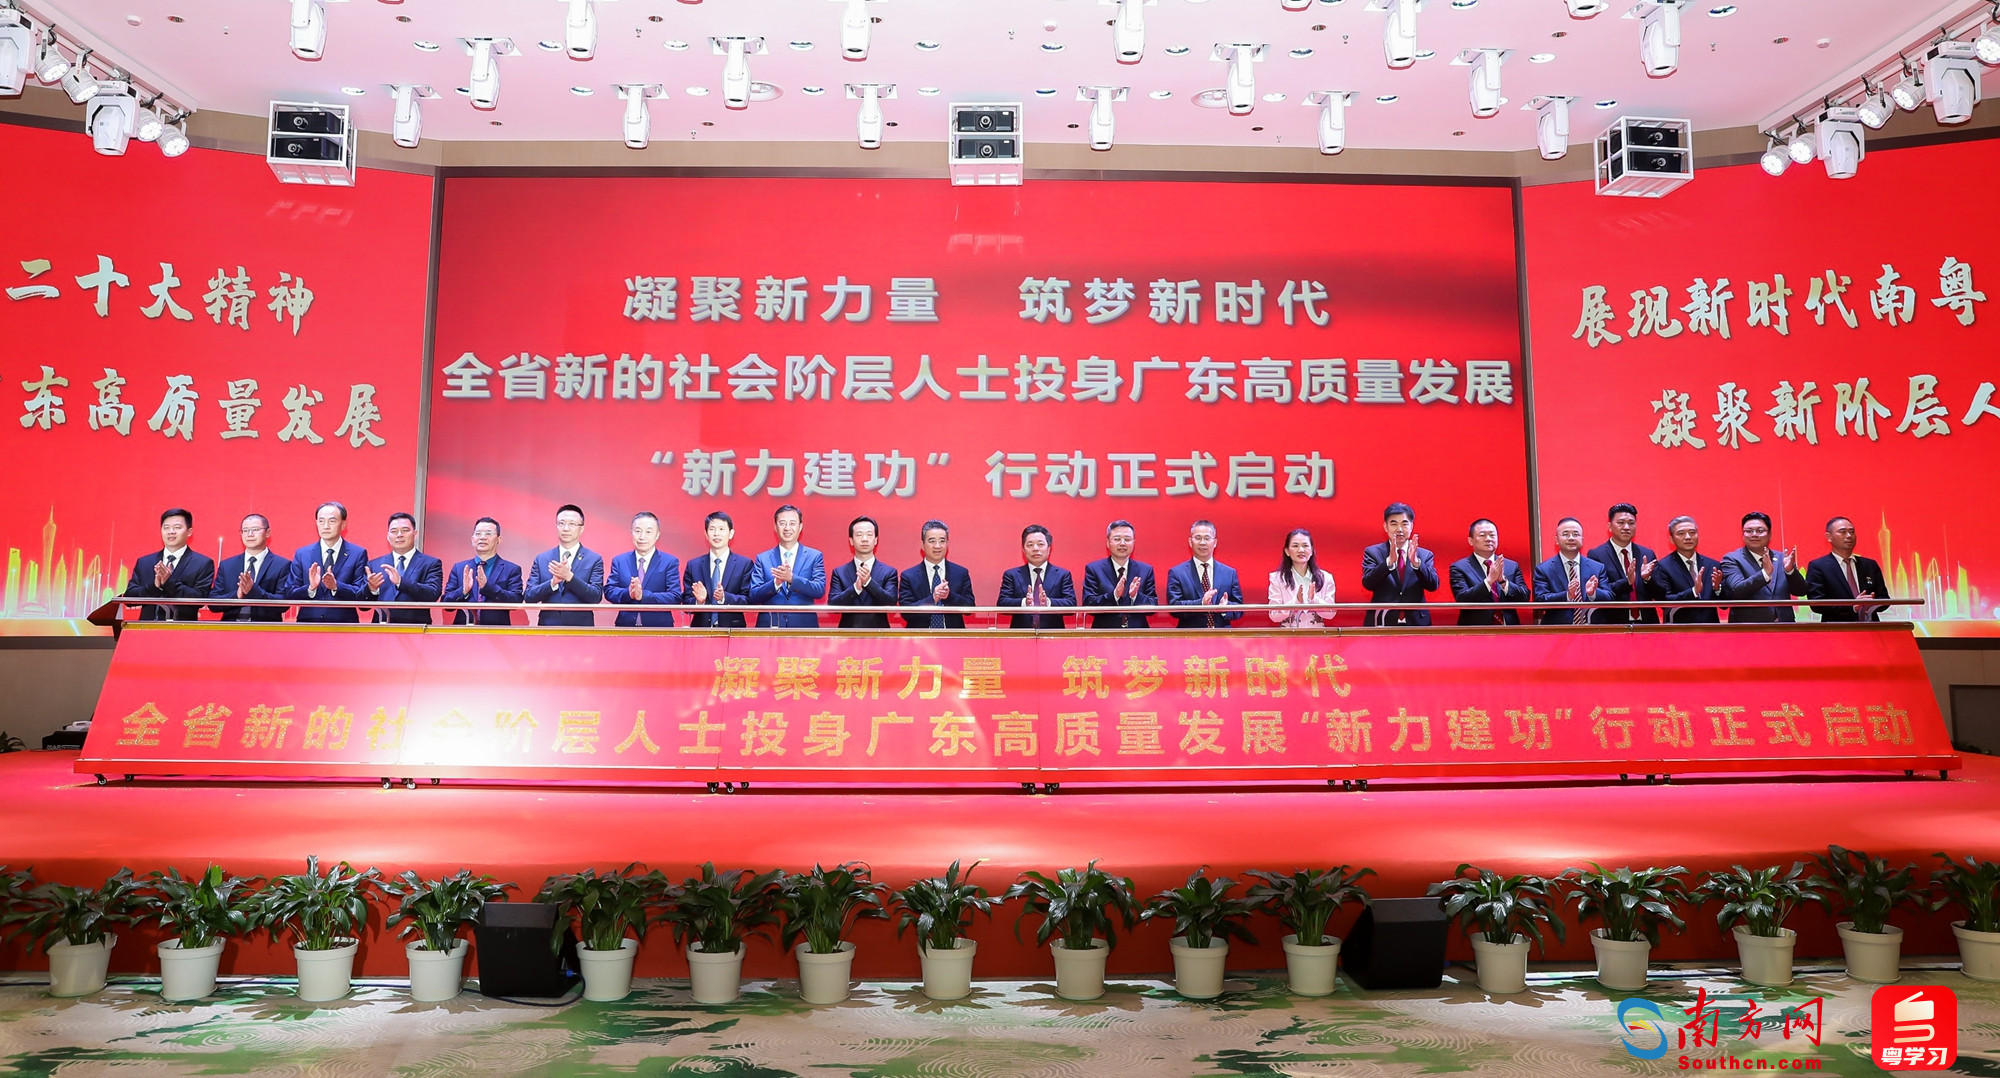 广东省新阶联发布18条措施助力高质量发展